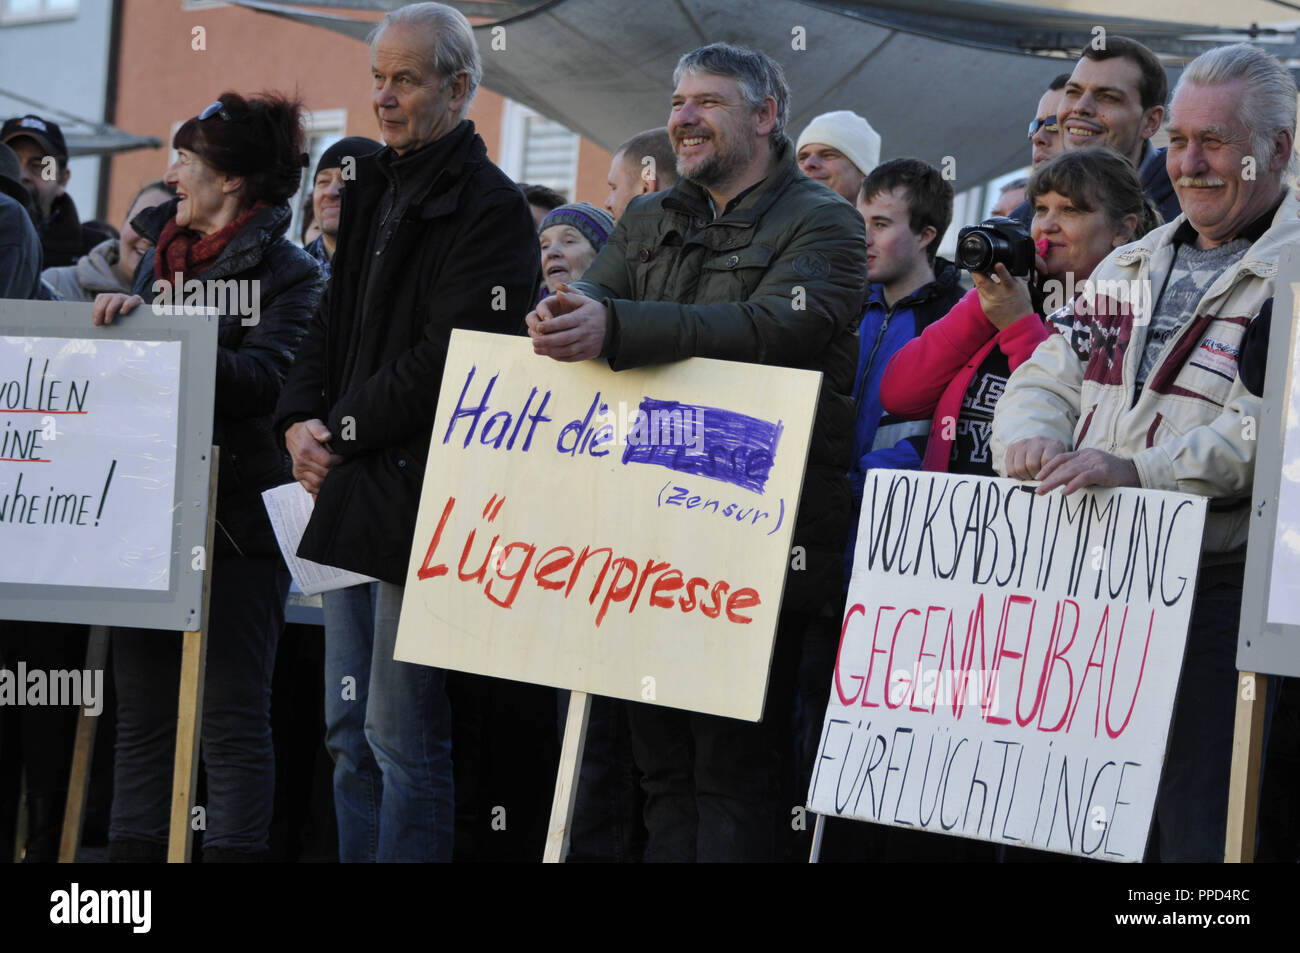 Alemanes rusos se reúnen en la plaza del pueblo de Traunreut para manifestarse en contra de las políticas de refugiados de Angela Merkel, el Islam y la supuesta mentira de prensa. Foto de stock